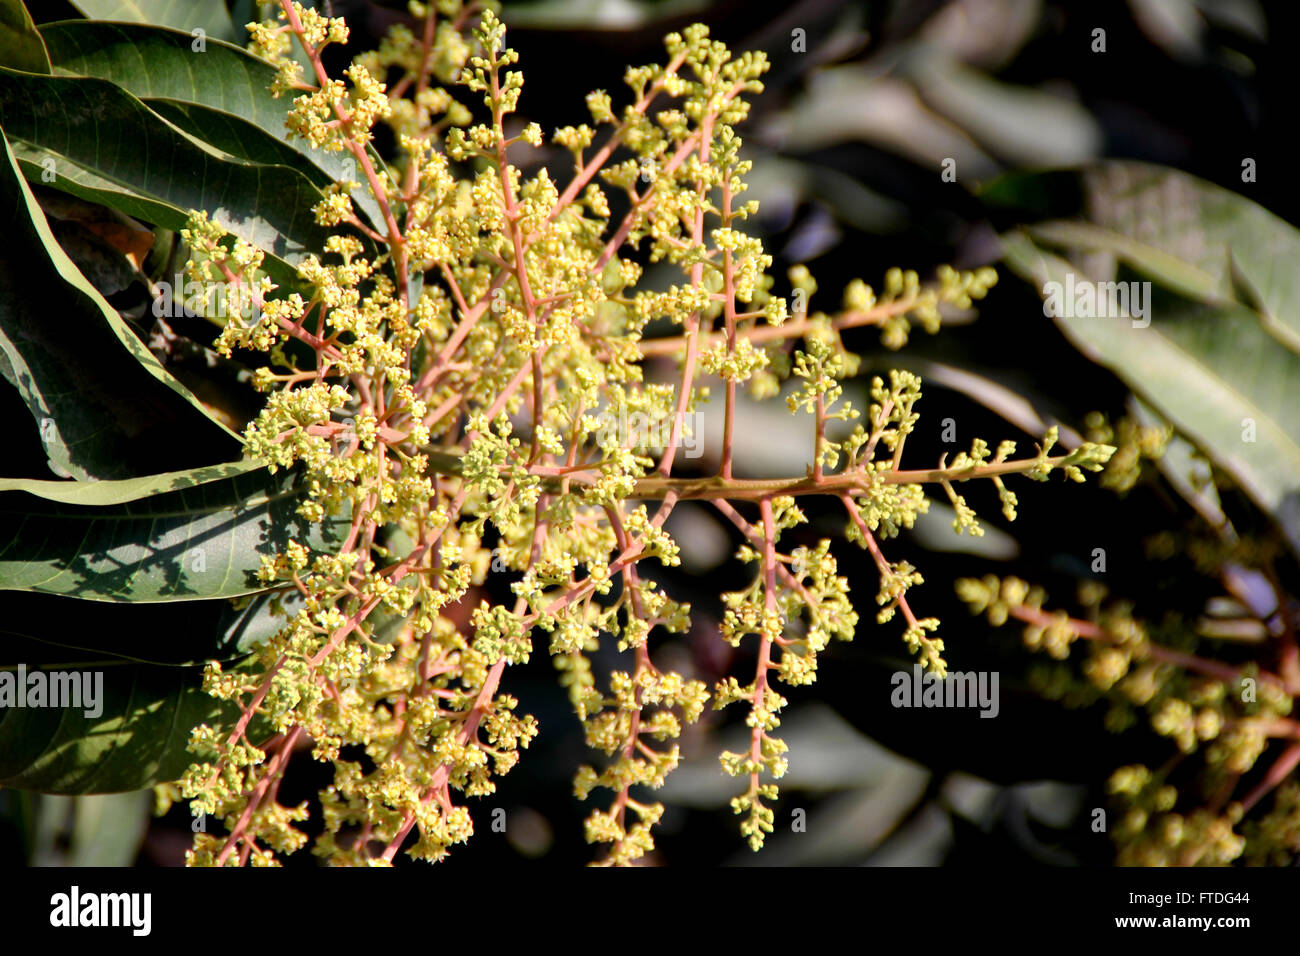 Il Mango Tree in fiore, Mangifera indica, albero sempreverde, foglie lanceolate, giallo pallido fiori e frutta drupa, molte cultivar Foto Stock